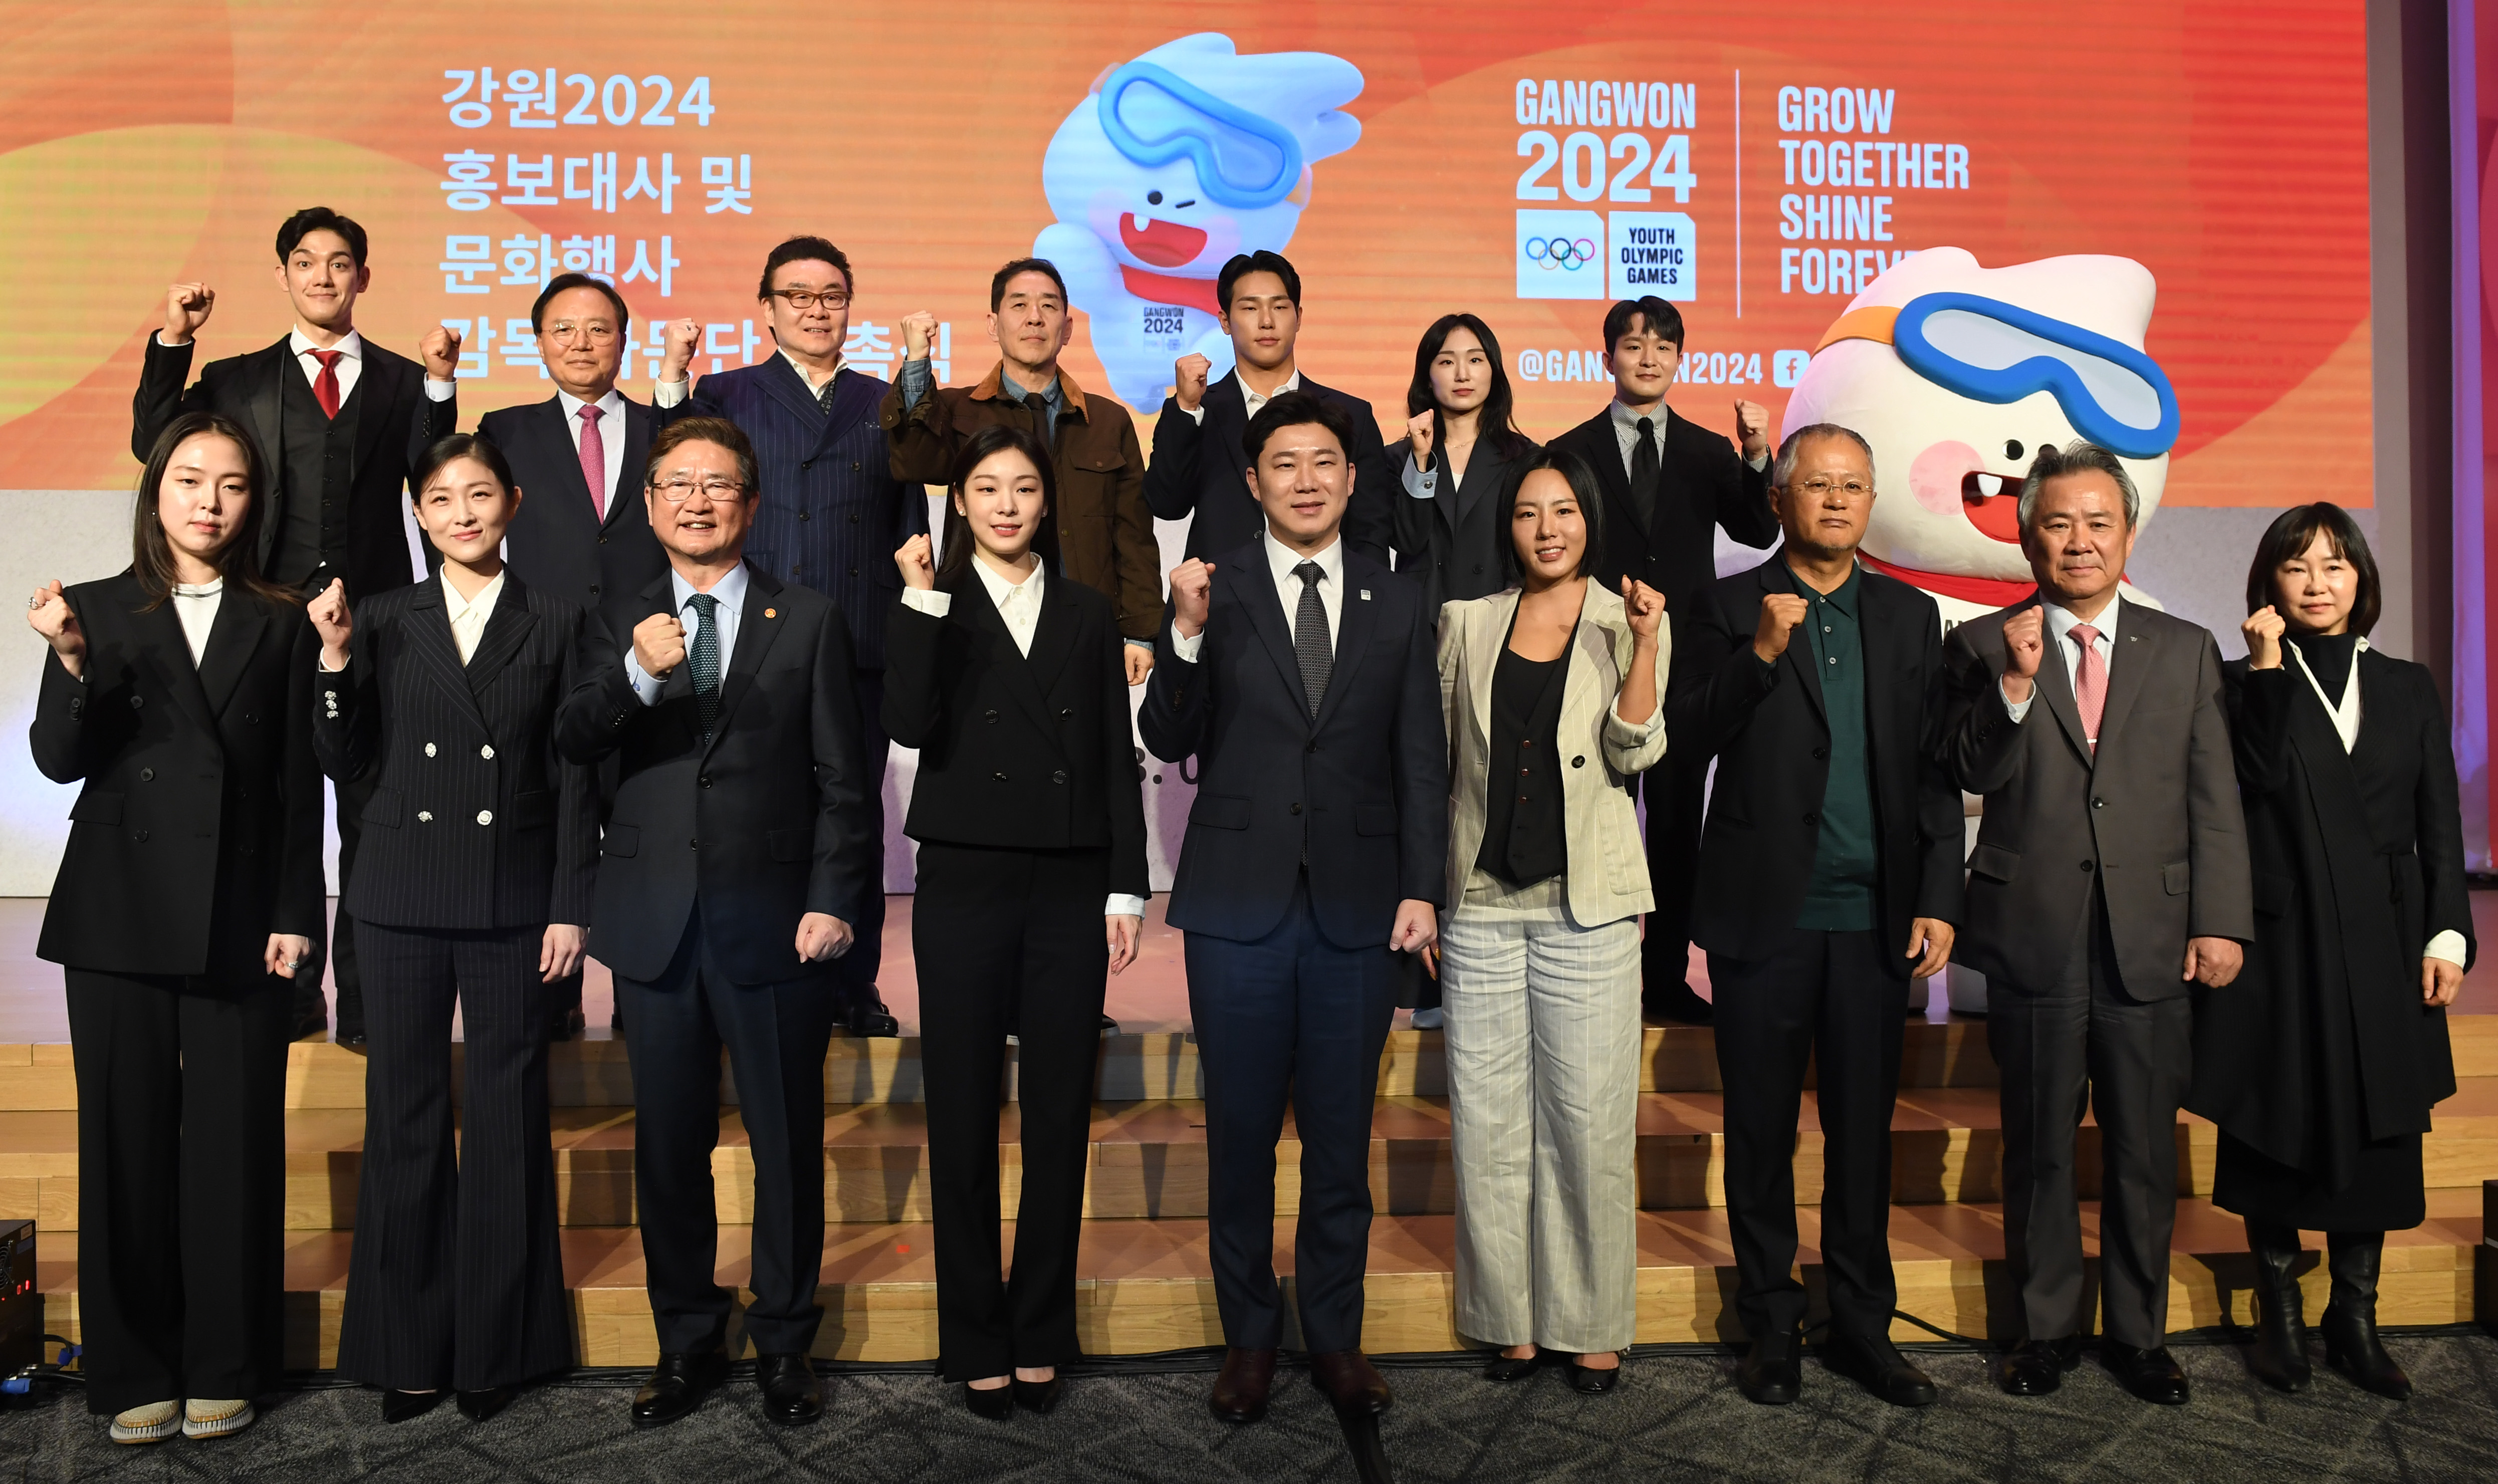 300일 앞둔 '2024 강원 동계청소년올림픽' 성공 기원하며